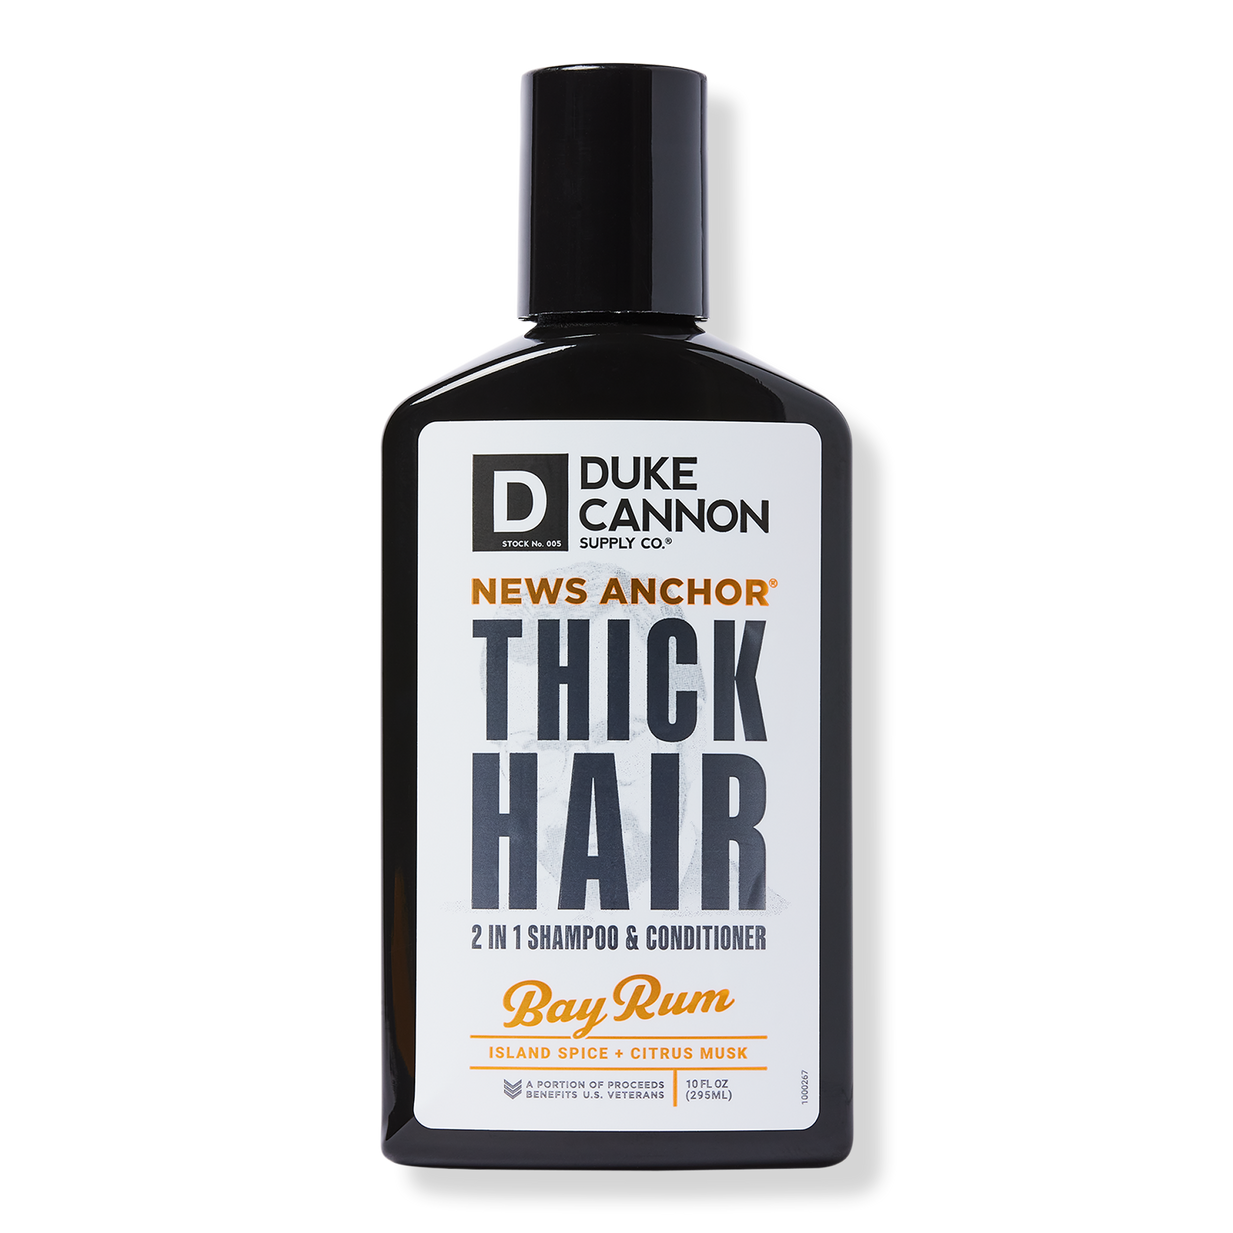 News Anchor 2 In 1 Bay Rum Hair Wash - Duke Cannon Supply Co | Ulta Beauty